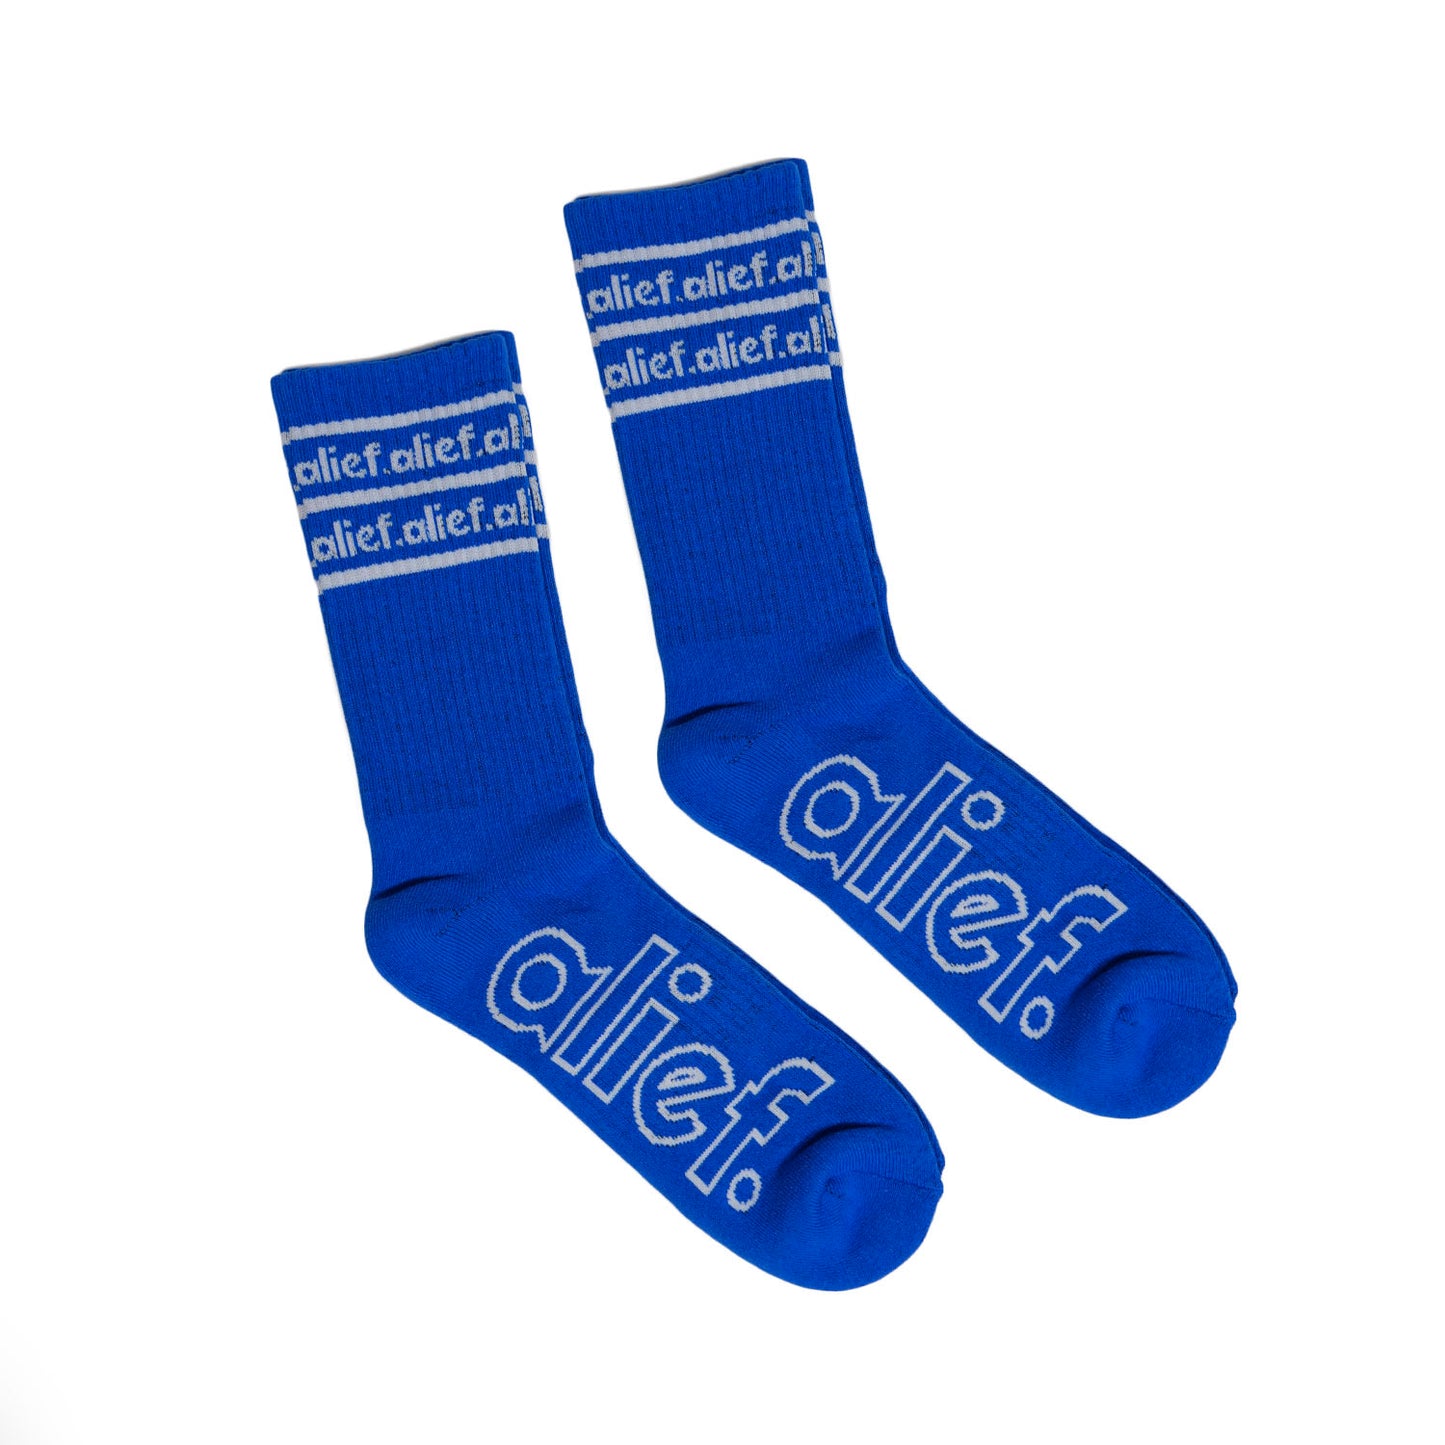 Alief Socks - Blue